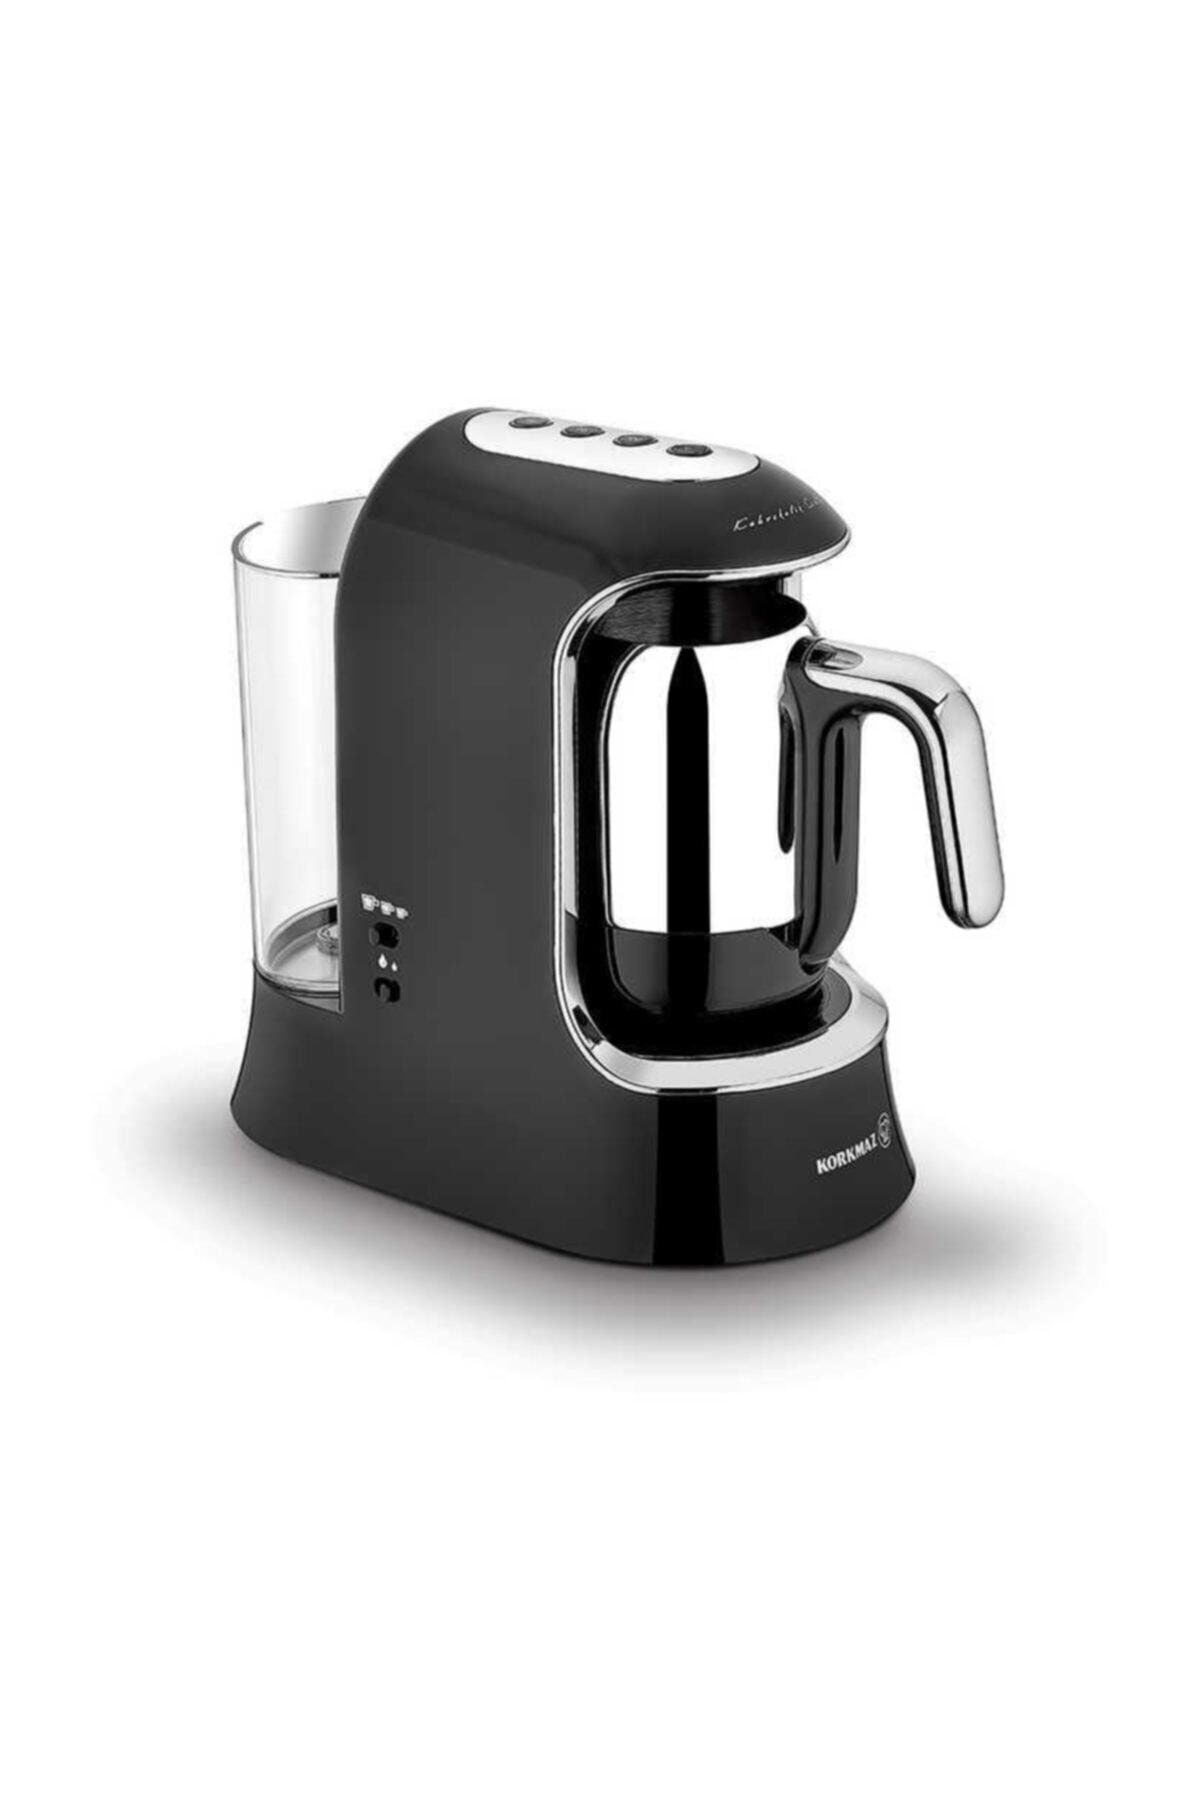 KORKMAZ Kahvekolik Aqua Siyah/krom Otomatik Kahve Makinesi A862-01